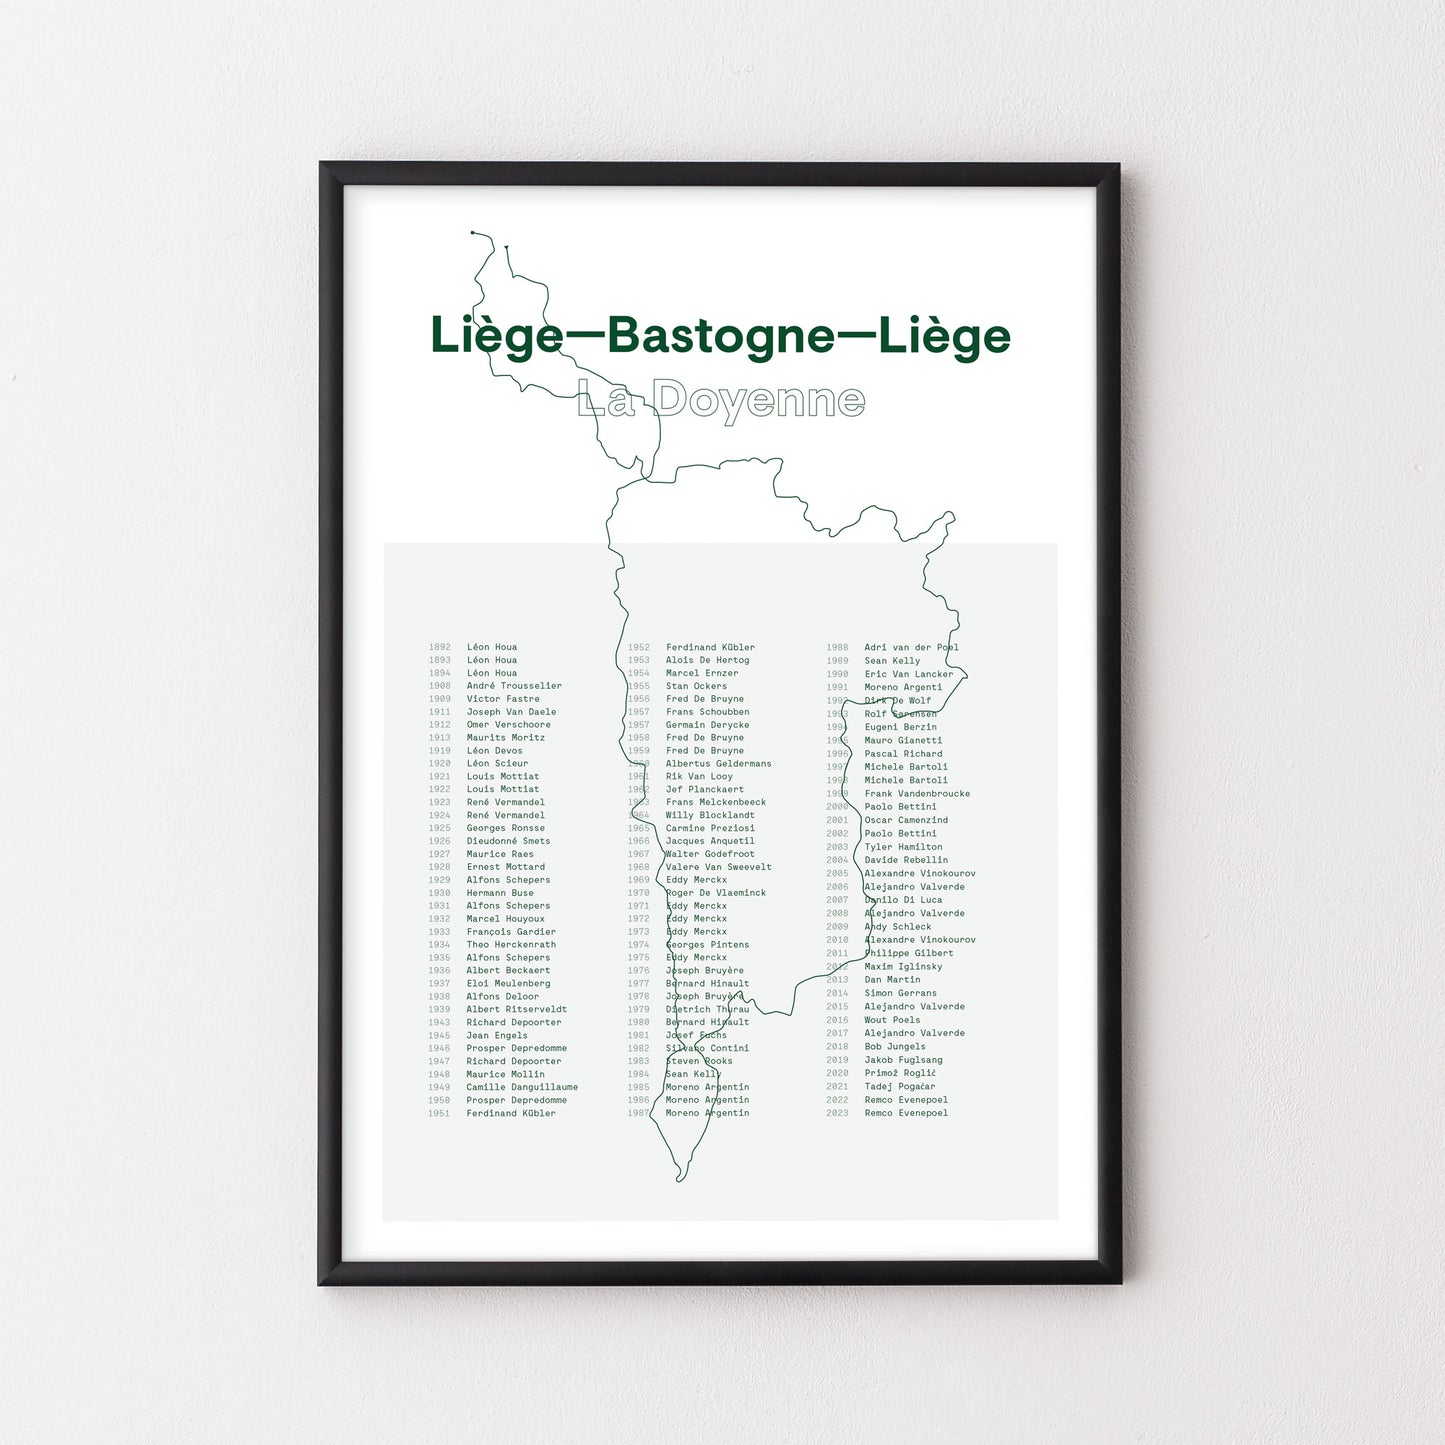 Liege – Bastogne – Liege History